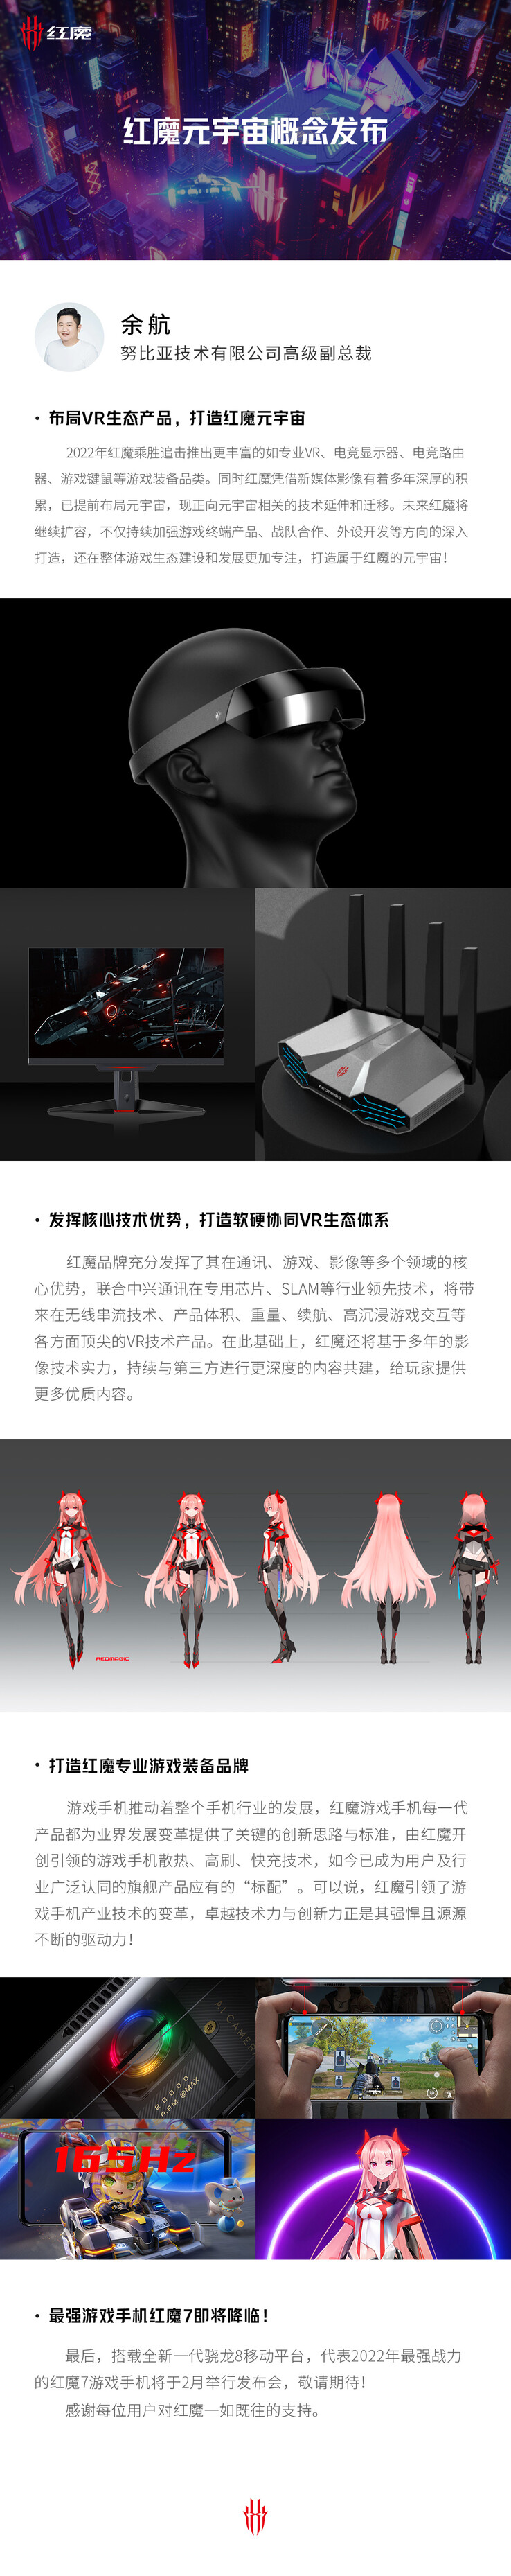 A RedMagic deixa cair várias dicas de novos produtos no mesmo cartaz. (Fonte: RedMagic via Weibo)